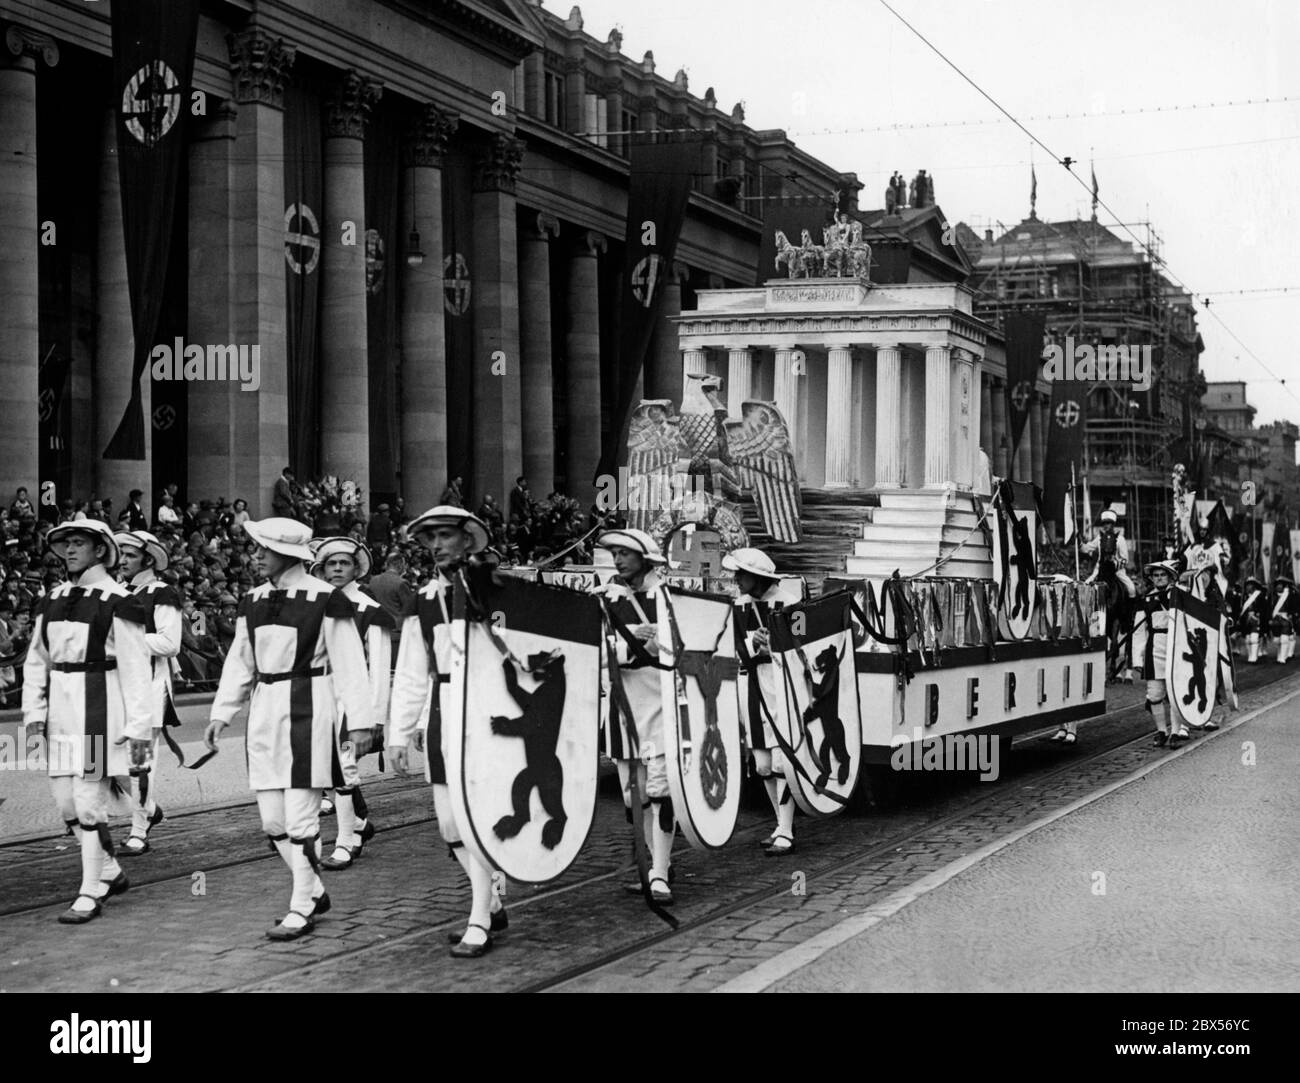 Vista della processione in occasione della riunione dell'organizzazione estera della NSDAP a Stoccarda. L'immagine mostra la carrozza della capitale del Reich Berlino con la porta di Brandeburgo, lo stemma nazionale e l'emblema nazionale: L'aquila imperiale con la swastika. Foto Stock